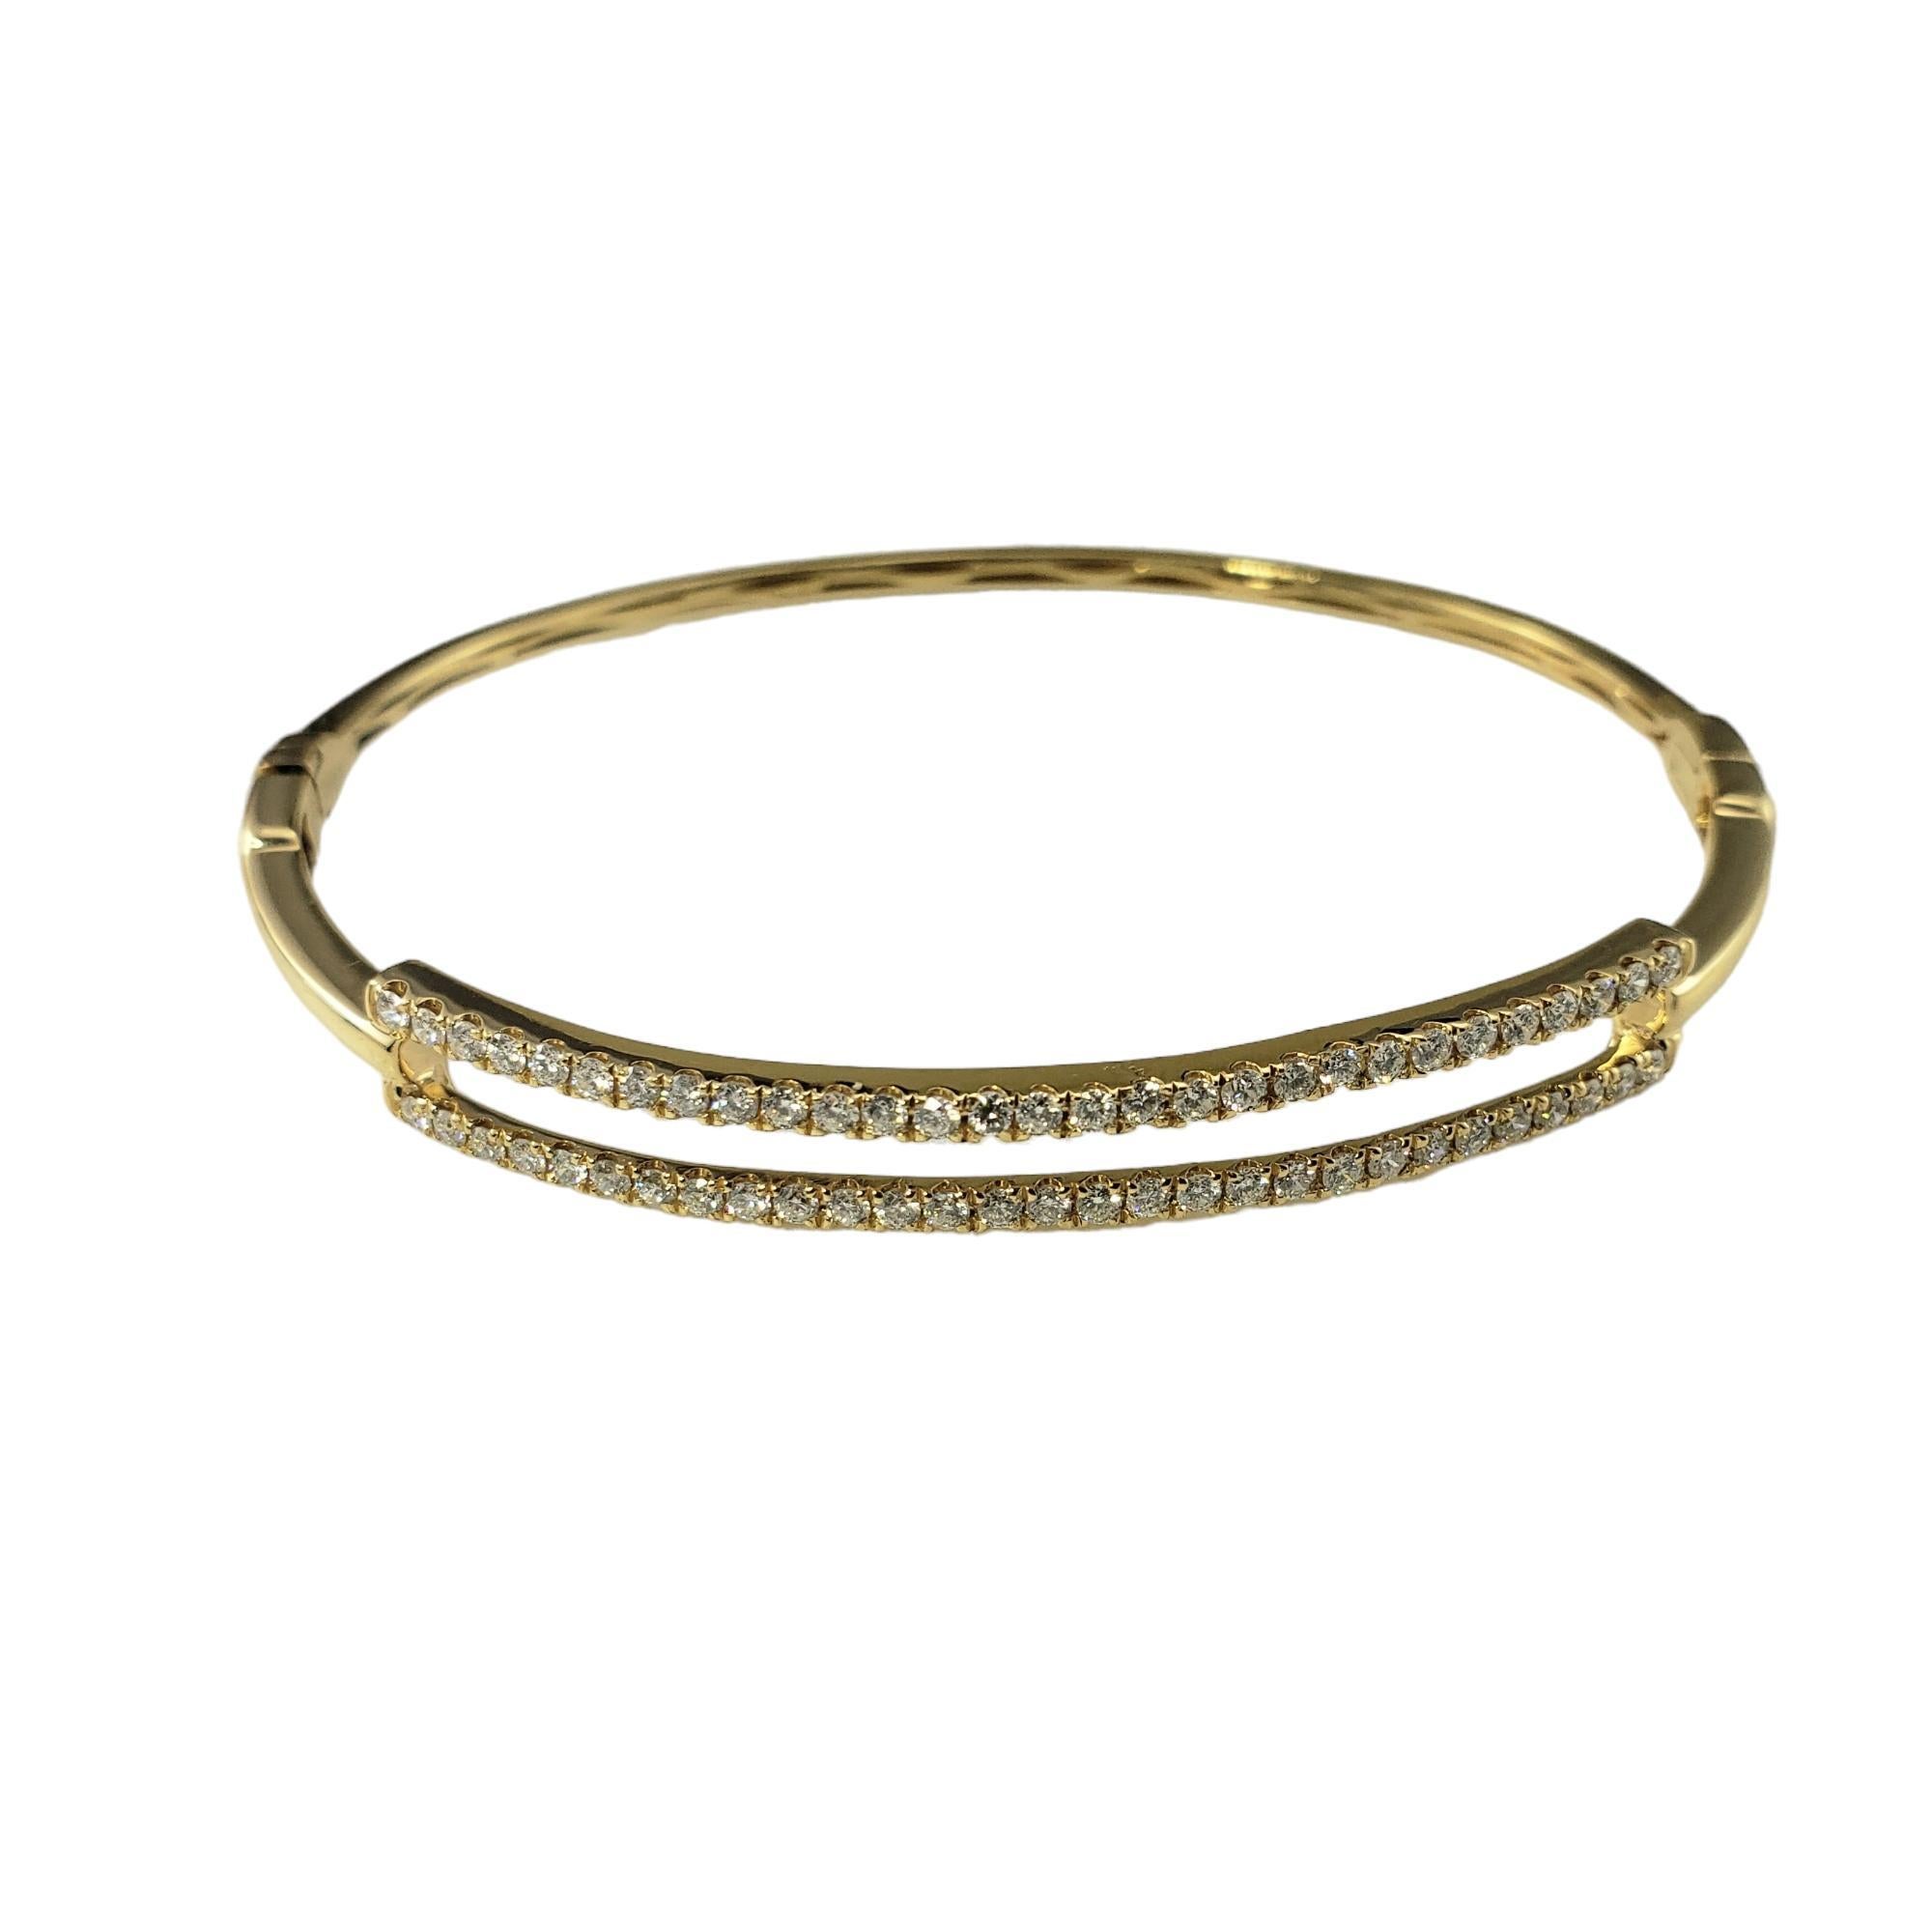 Bracelet jonc en or jaune 18 carats et diamants

Ce bracelet étincelant est orné de 58 diamants ronds de taille brillante sertis dans de l'or jaune 18 carats magnifiquement détaillé.  Fermeture à charnière.  

Largeur : 6 mm.

Poids total